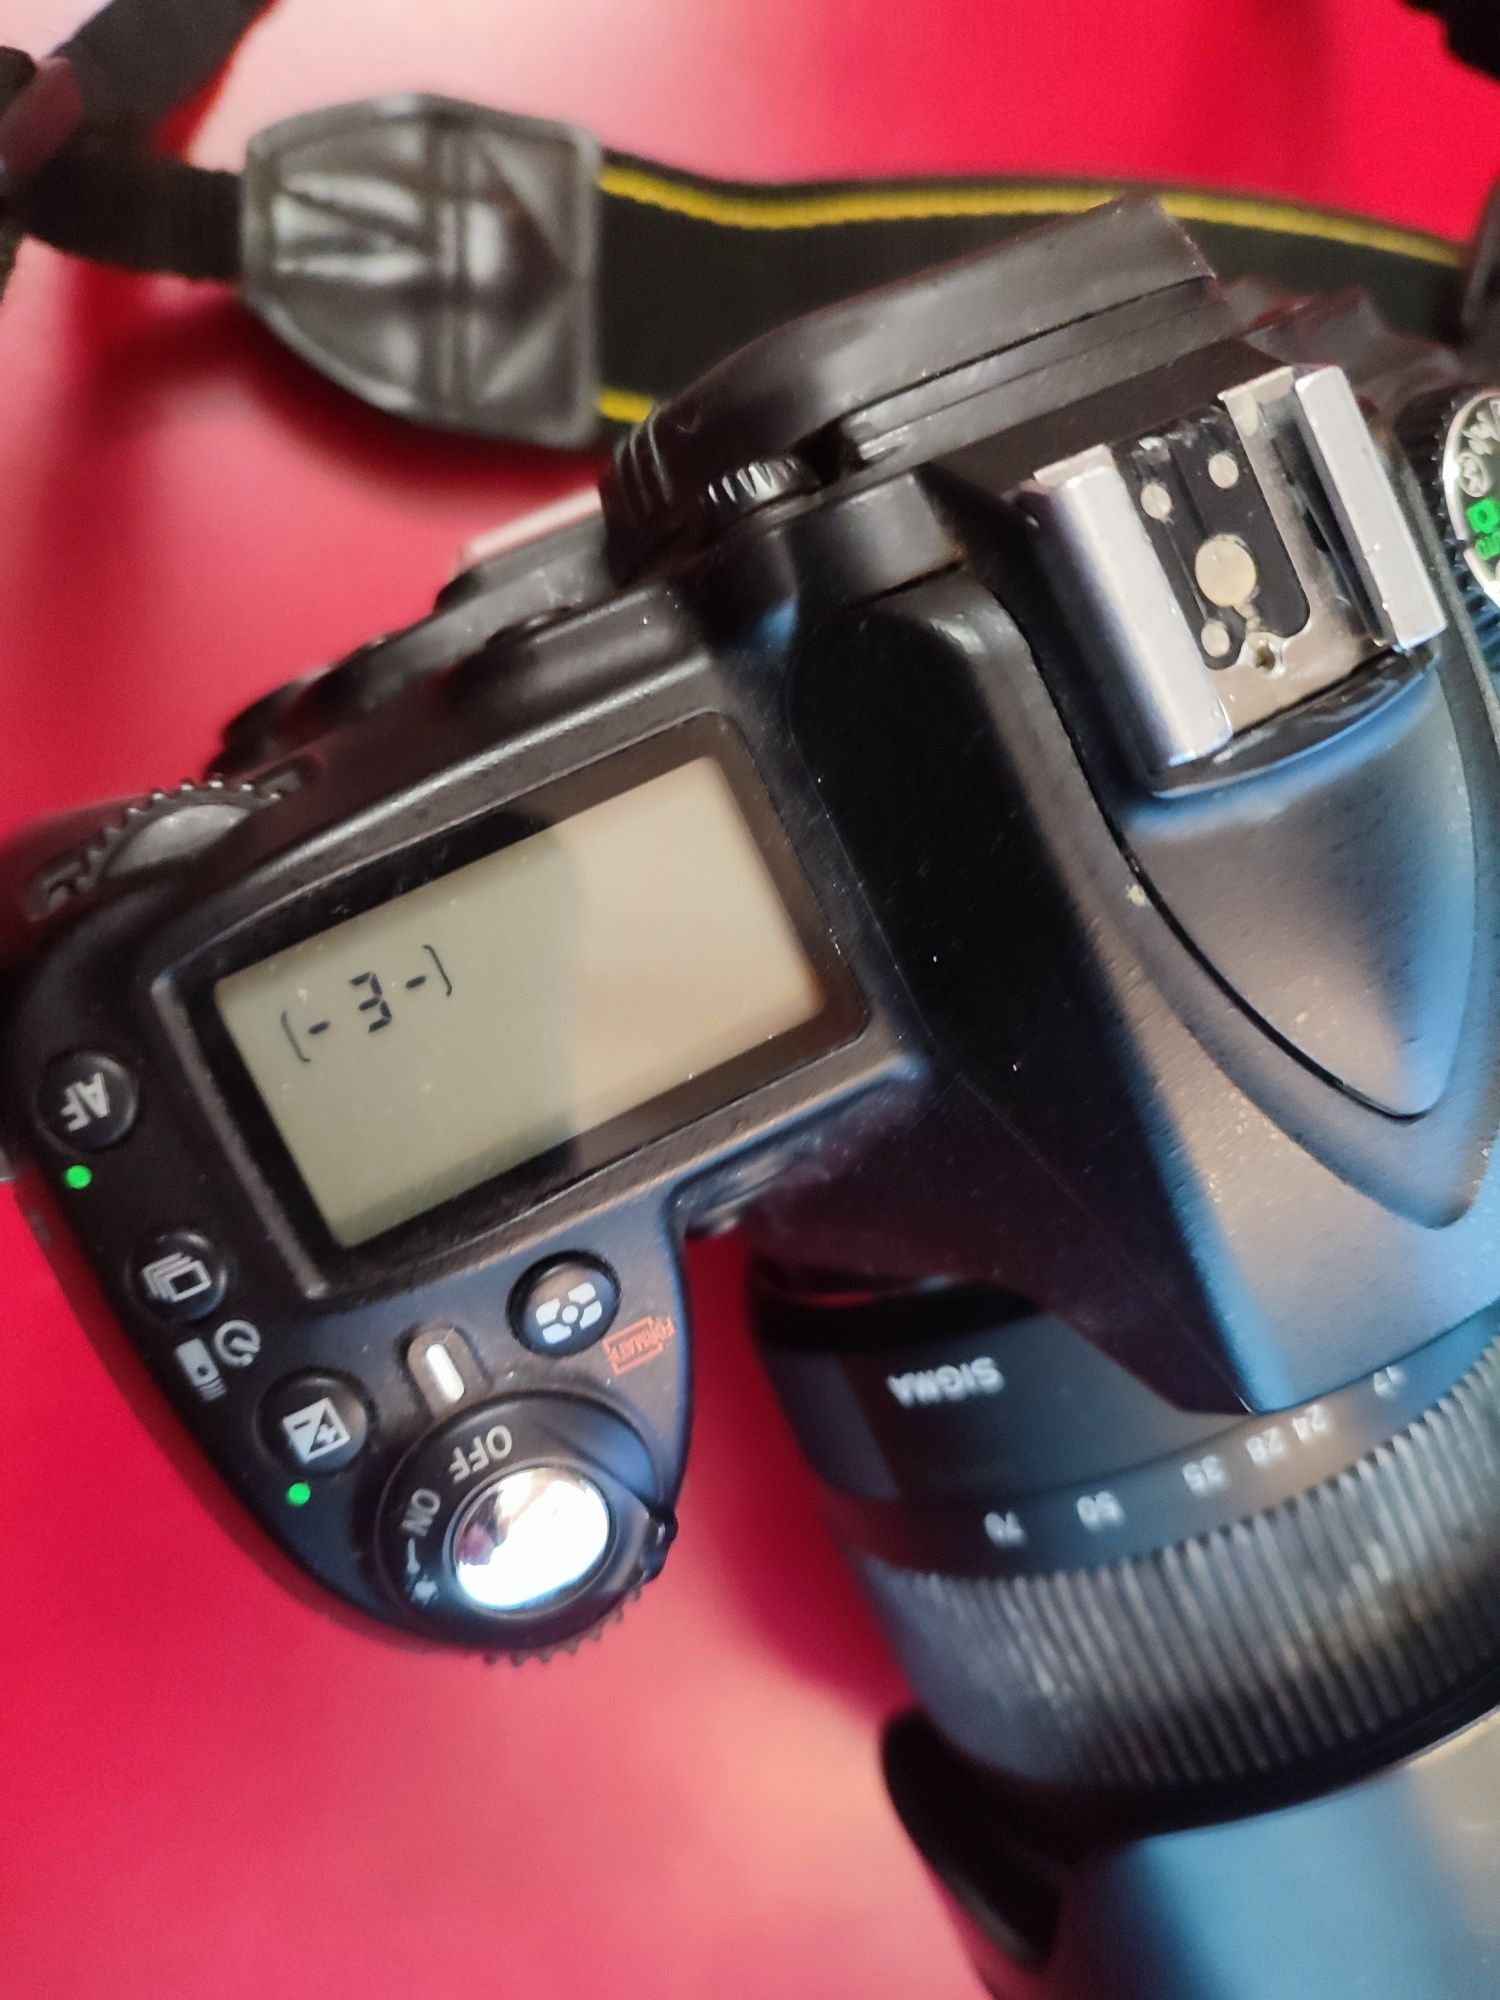 Nikon D90 + Sigma 17-70mm F2.8-4 + Grip